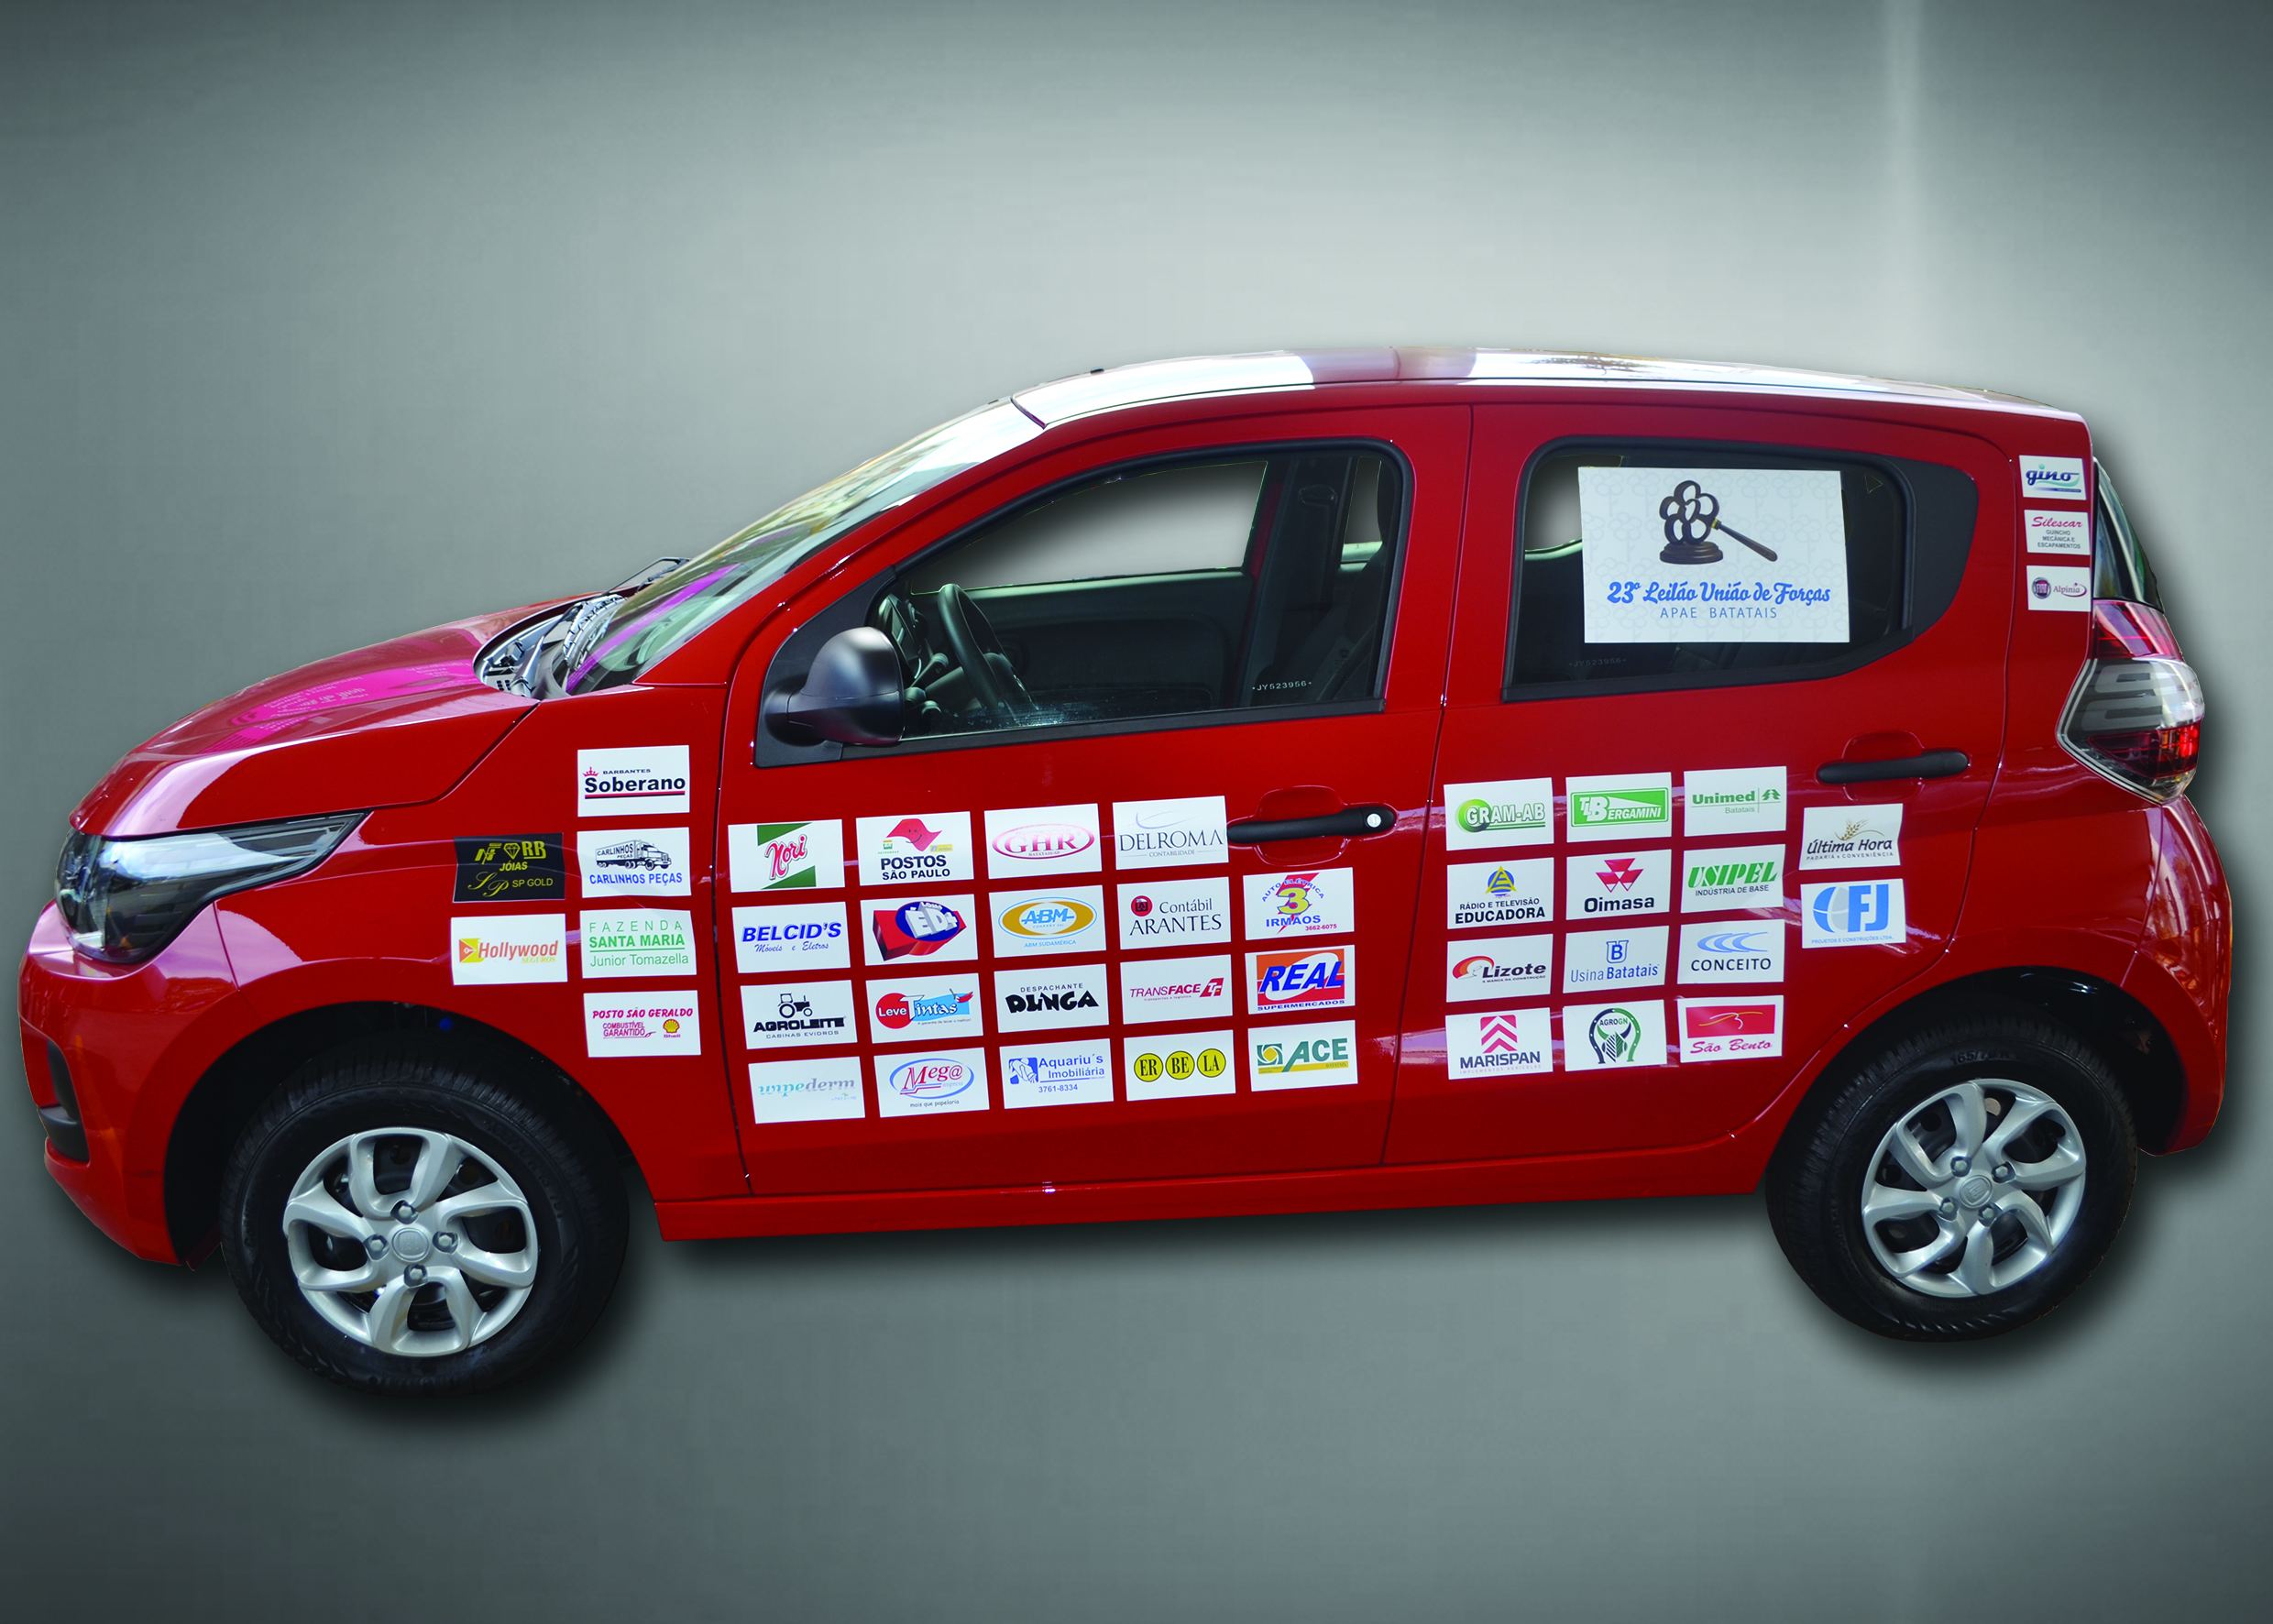  Fiat Mobi 0Km doado e que será sorteado durante o 23º Leilão da APAE Batatais